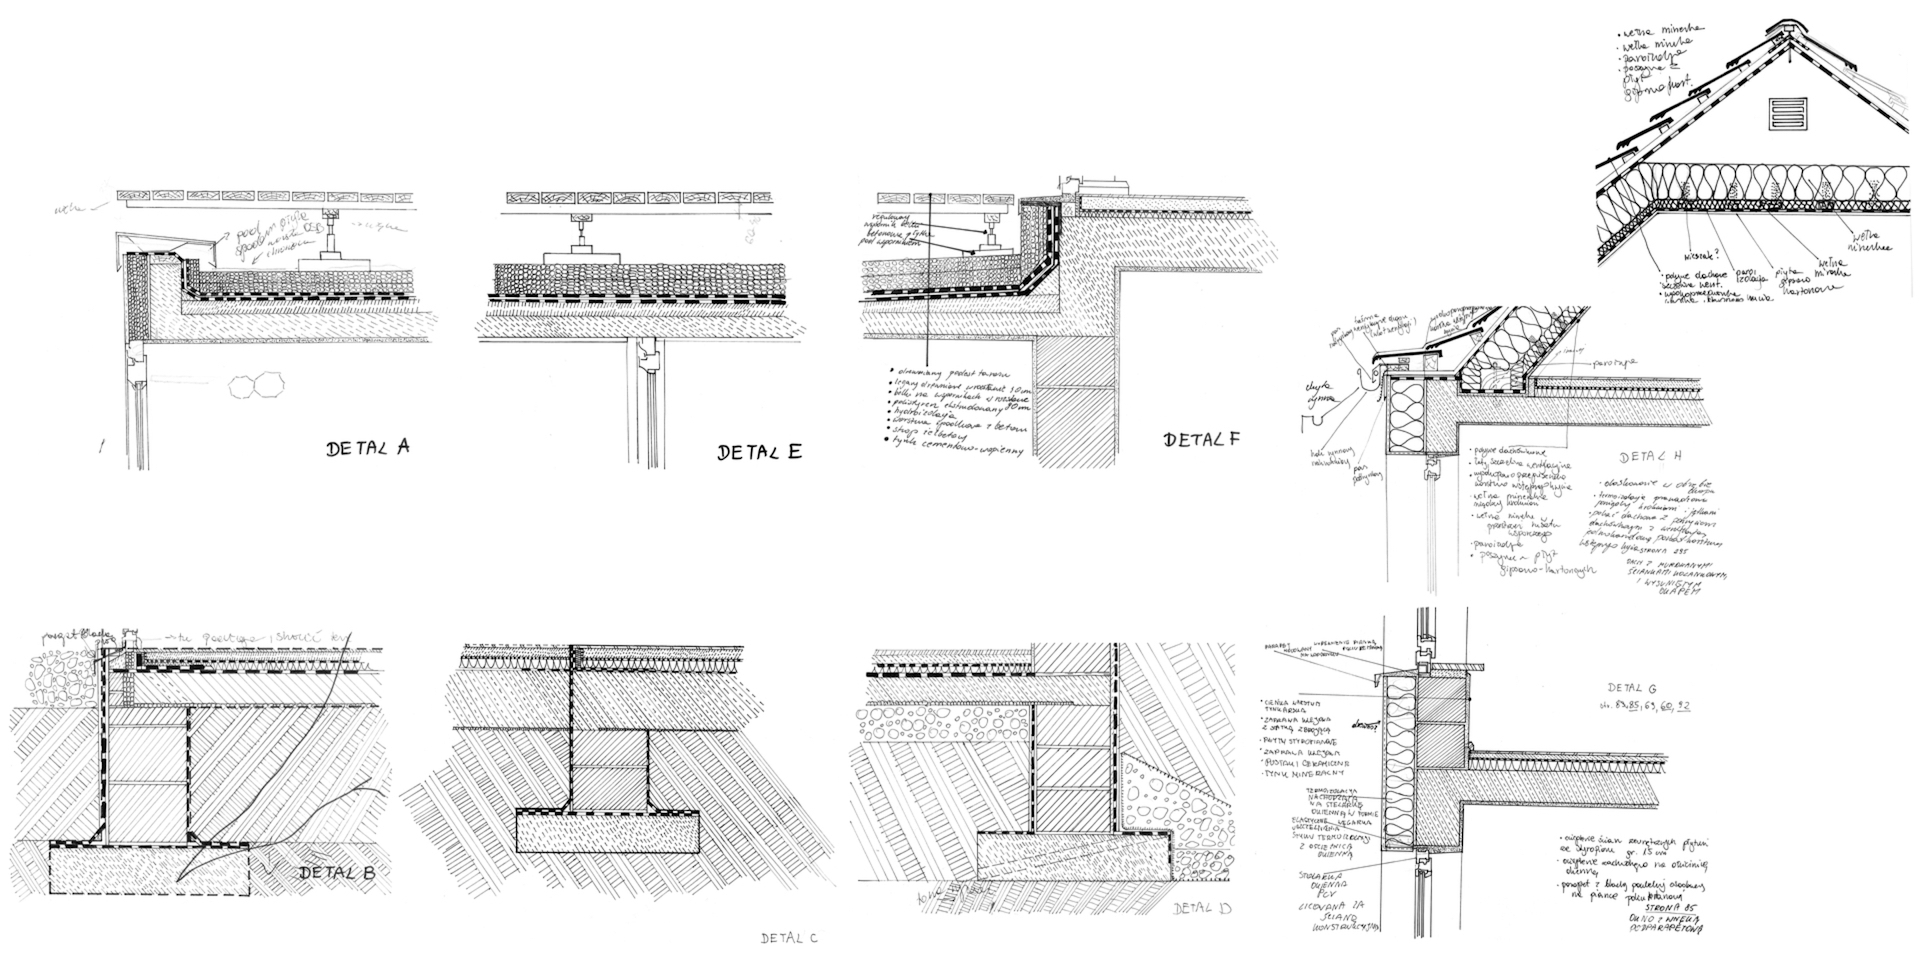 17. Plansza zawiera autorskie szkice komplementarne z dokumentacją techniczną, które obrazują strukturę ścian, stropu, dachu oraz posadowienie projektowanego budynku. 